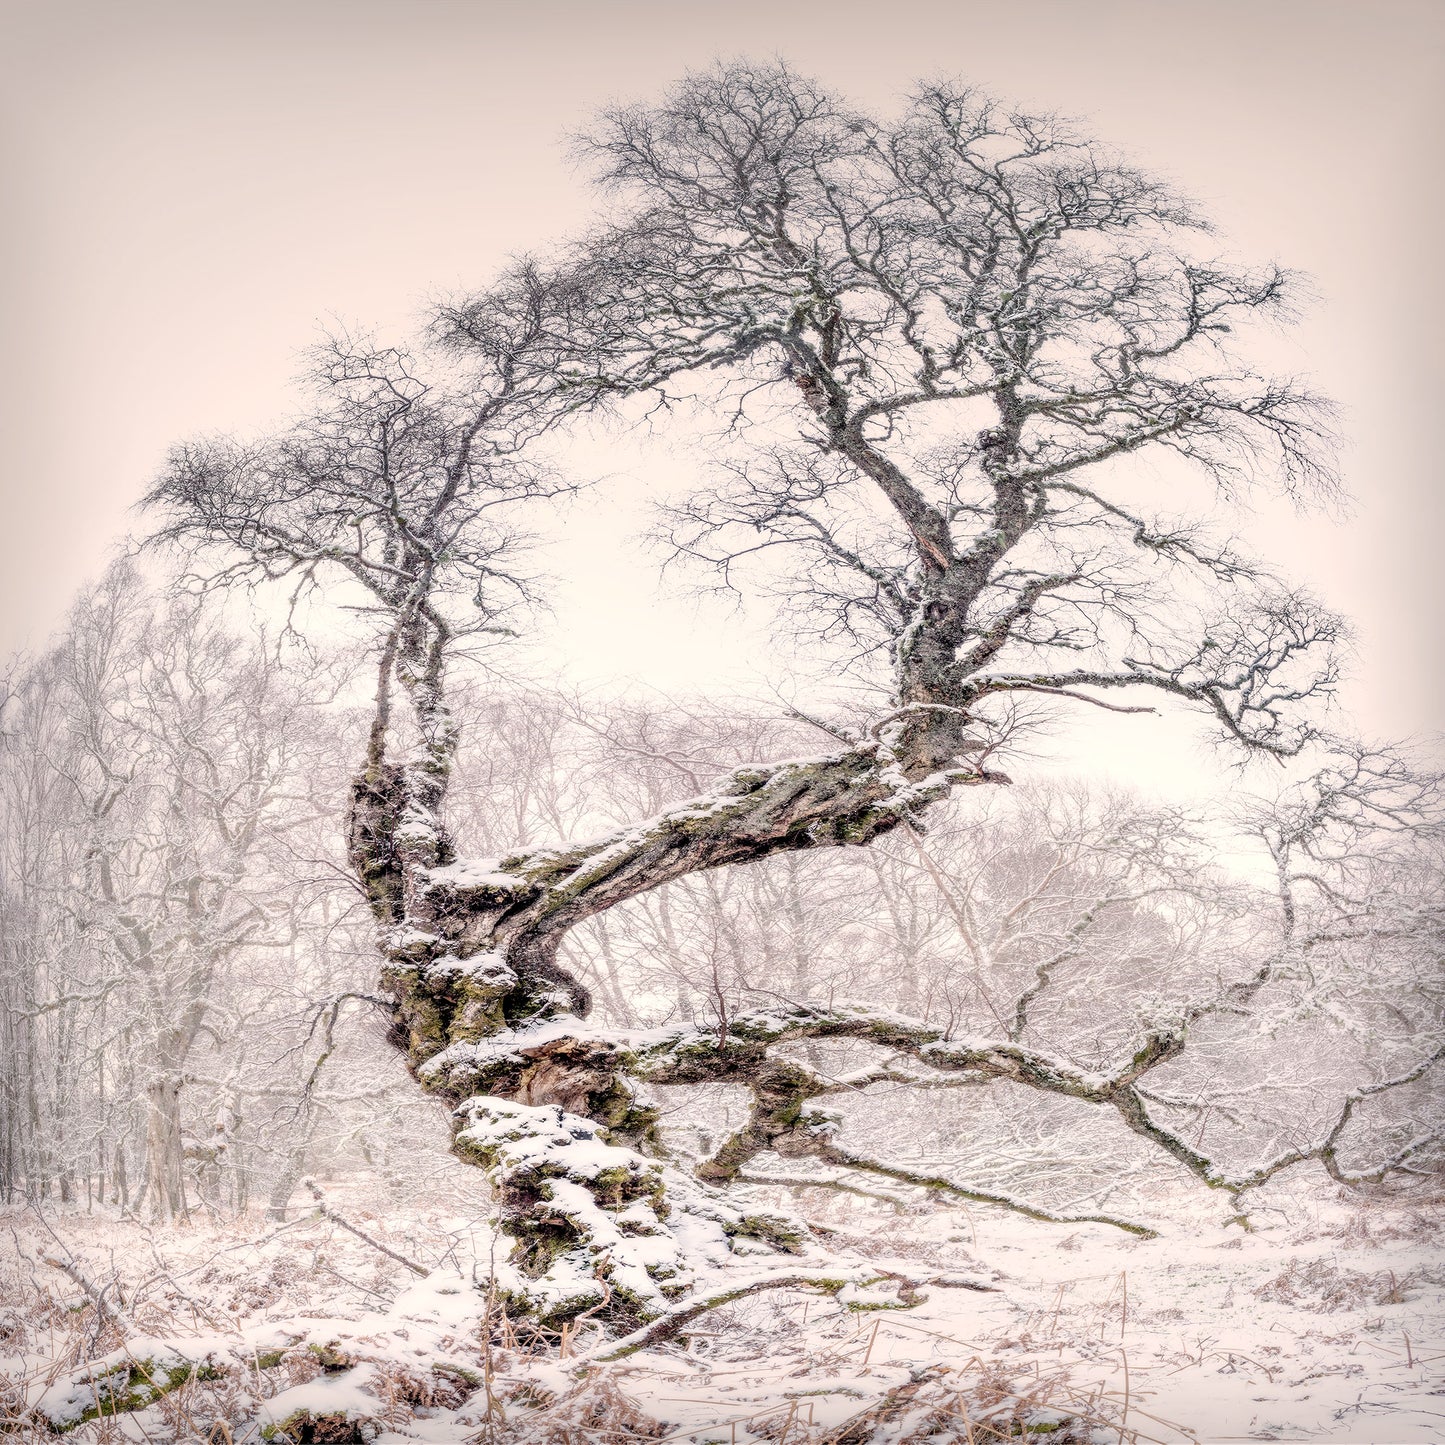 Silver Birch, The Ancient Rothiemuchus Forest, Scotland